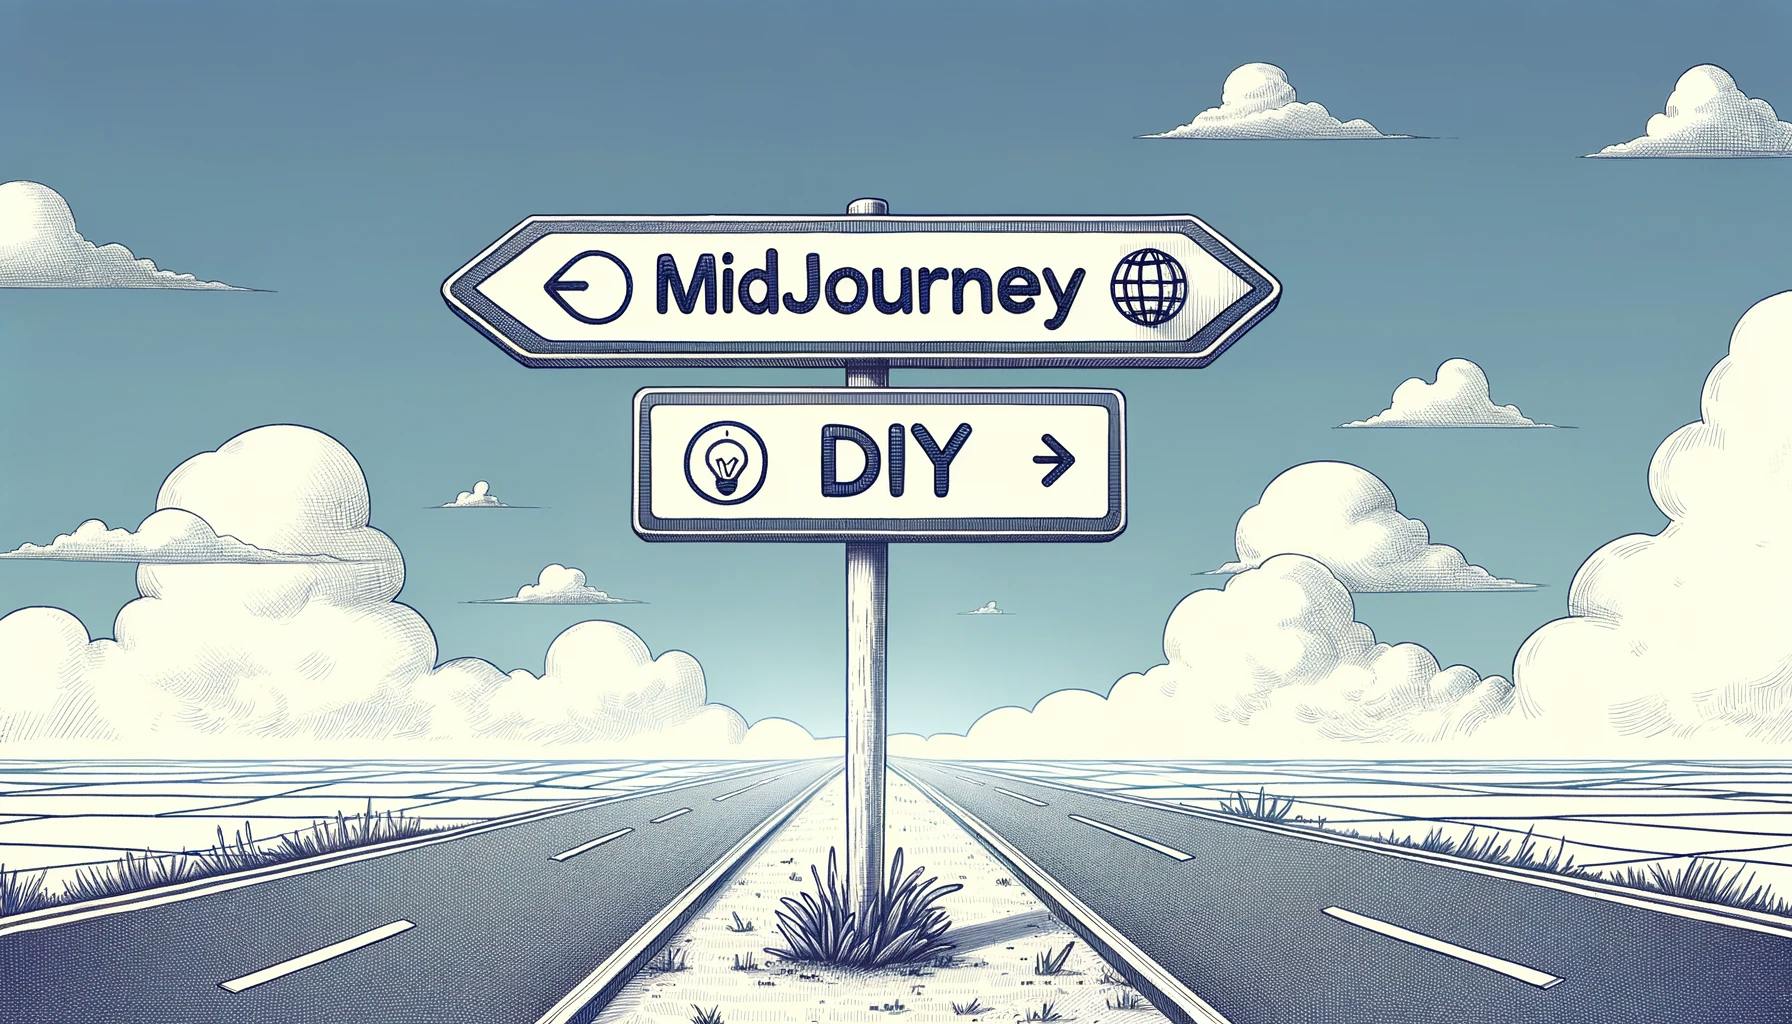 Midjourney API 가격에 대해 깊이 알아보세요. 공식 입장부터 도시락 솔루션 및 인기 있는 대안까지, 이 안내서에는 Midjourney API 환경을 탐색하기 위해 필요한 모든 정보가 담겨 있습니다.